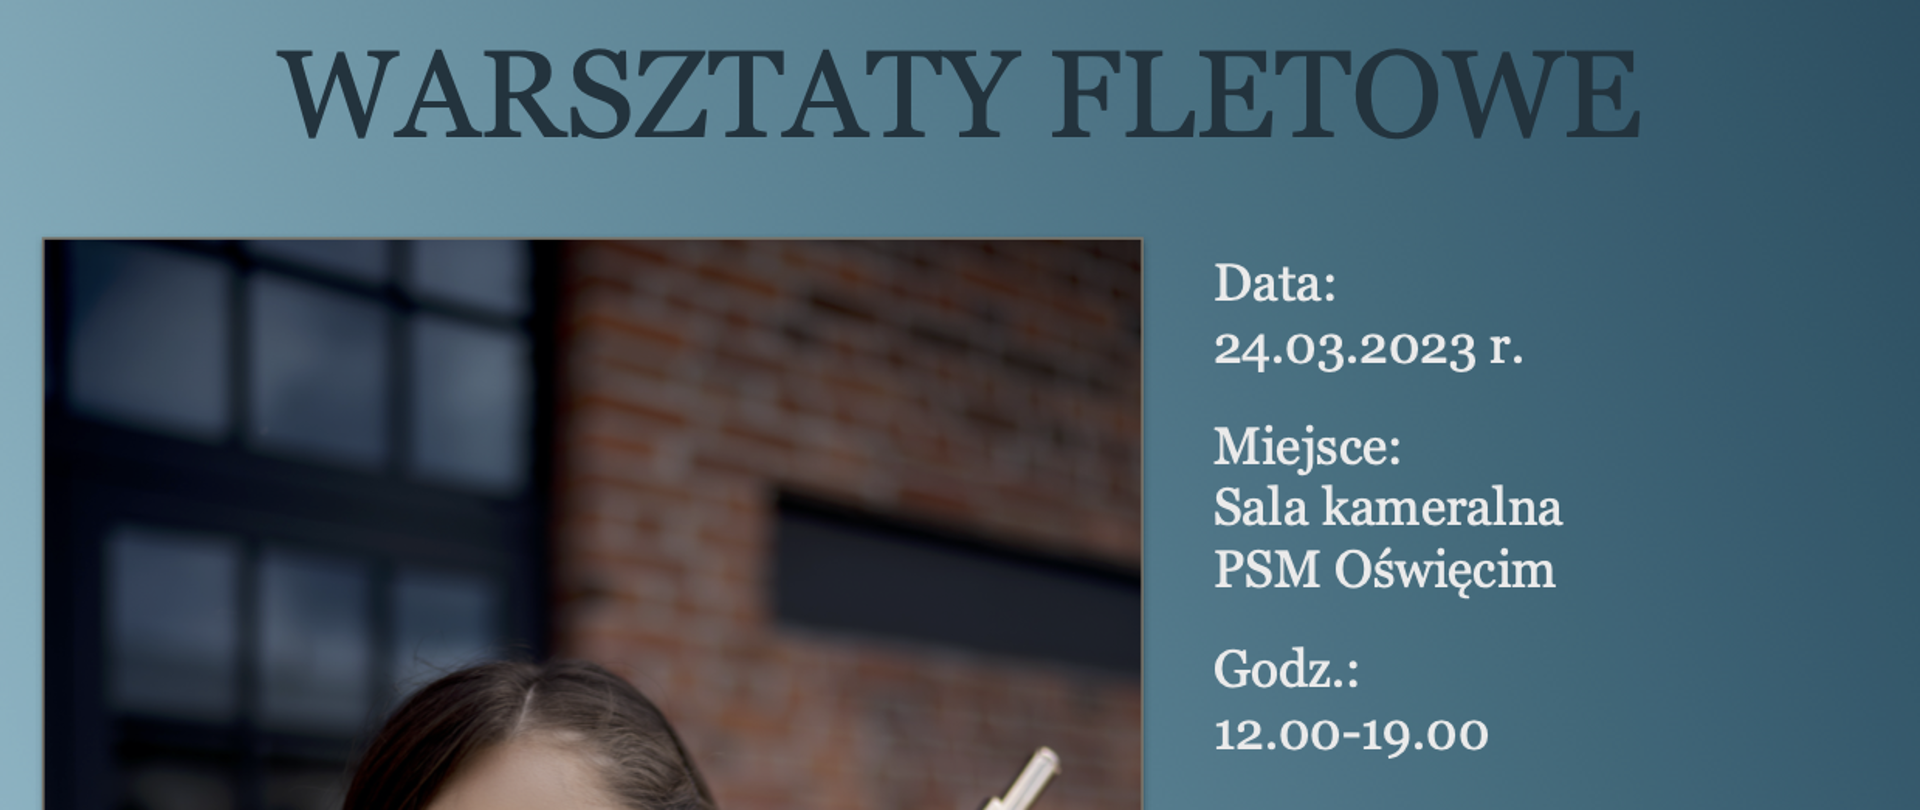 Zaproszenie na warsztaty fletowe prowadzone przez dr Martynę Klupś-Radny. Odbędą się one 24 marca 2023 r. w godzinach od 12:00 do 19:00 na sali kameralnej.